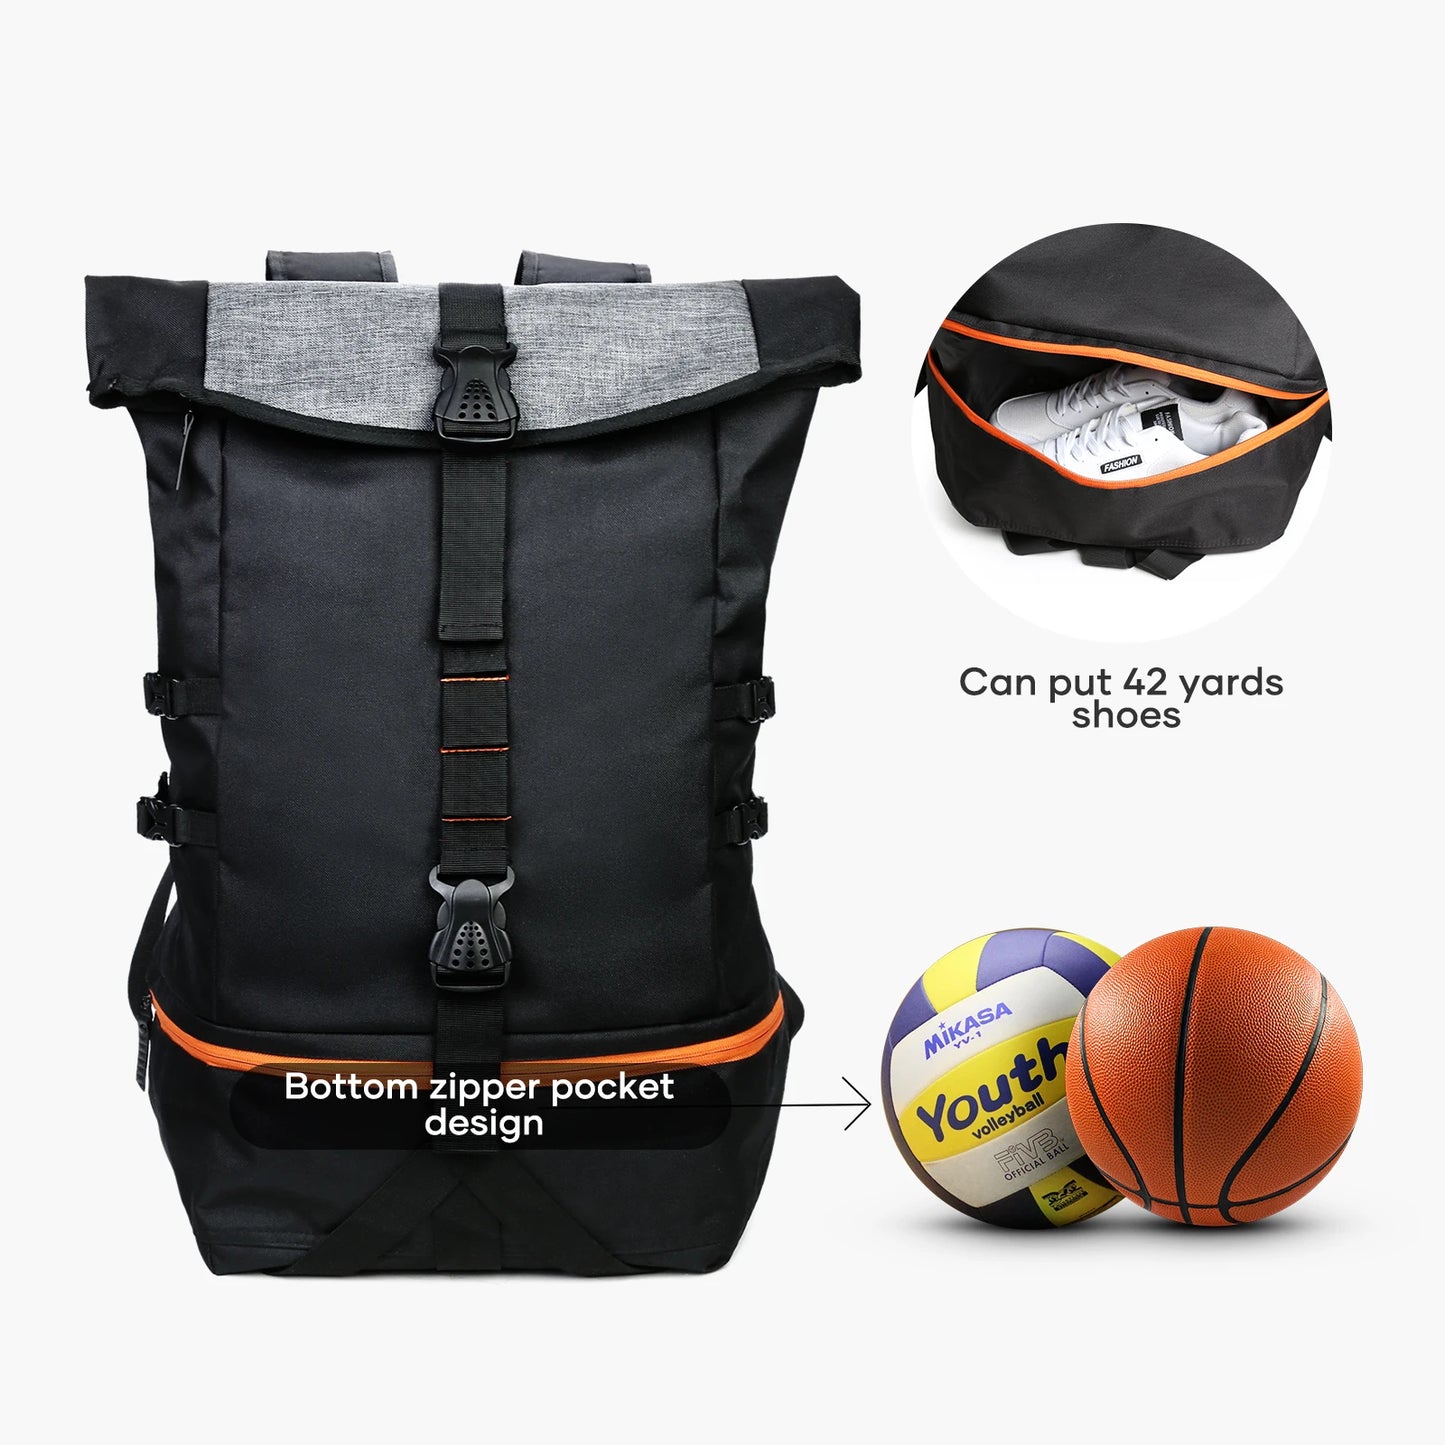 حقيبة ظهر رياضية كبيرة لكرة السلة للرجال مع حجرة منفصلة للكرة، وحقيبة معدات رياضية لكرة القدم والكرة الطائرة والسفر